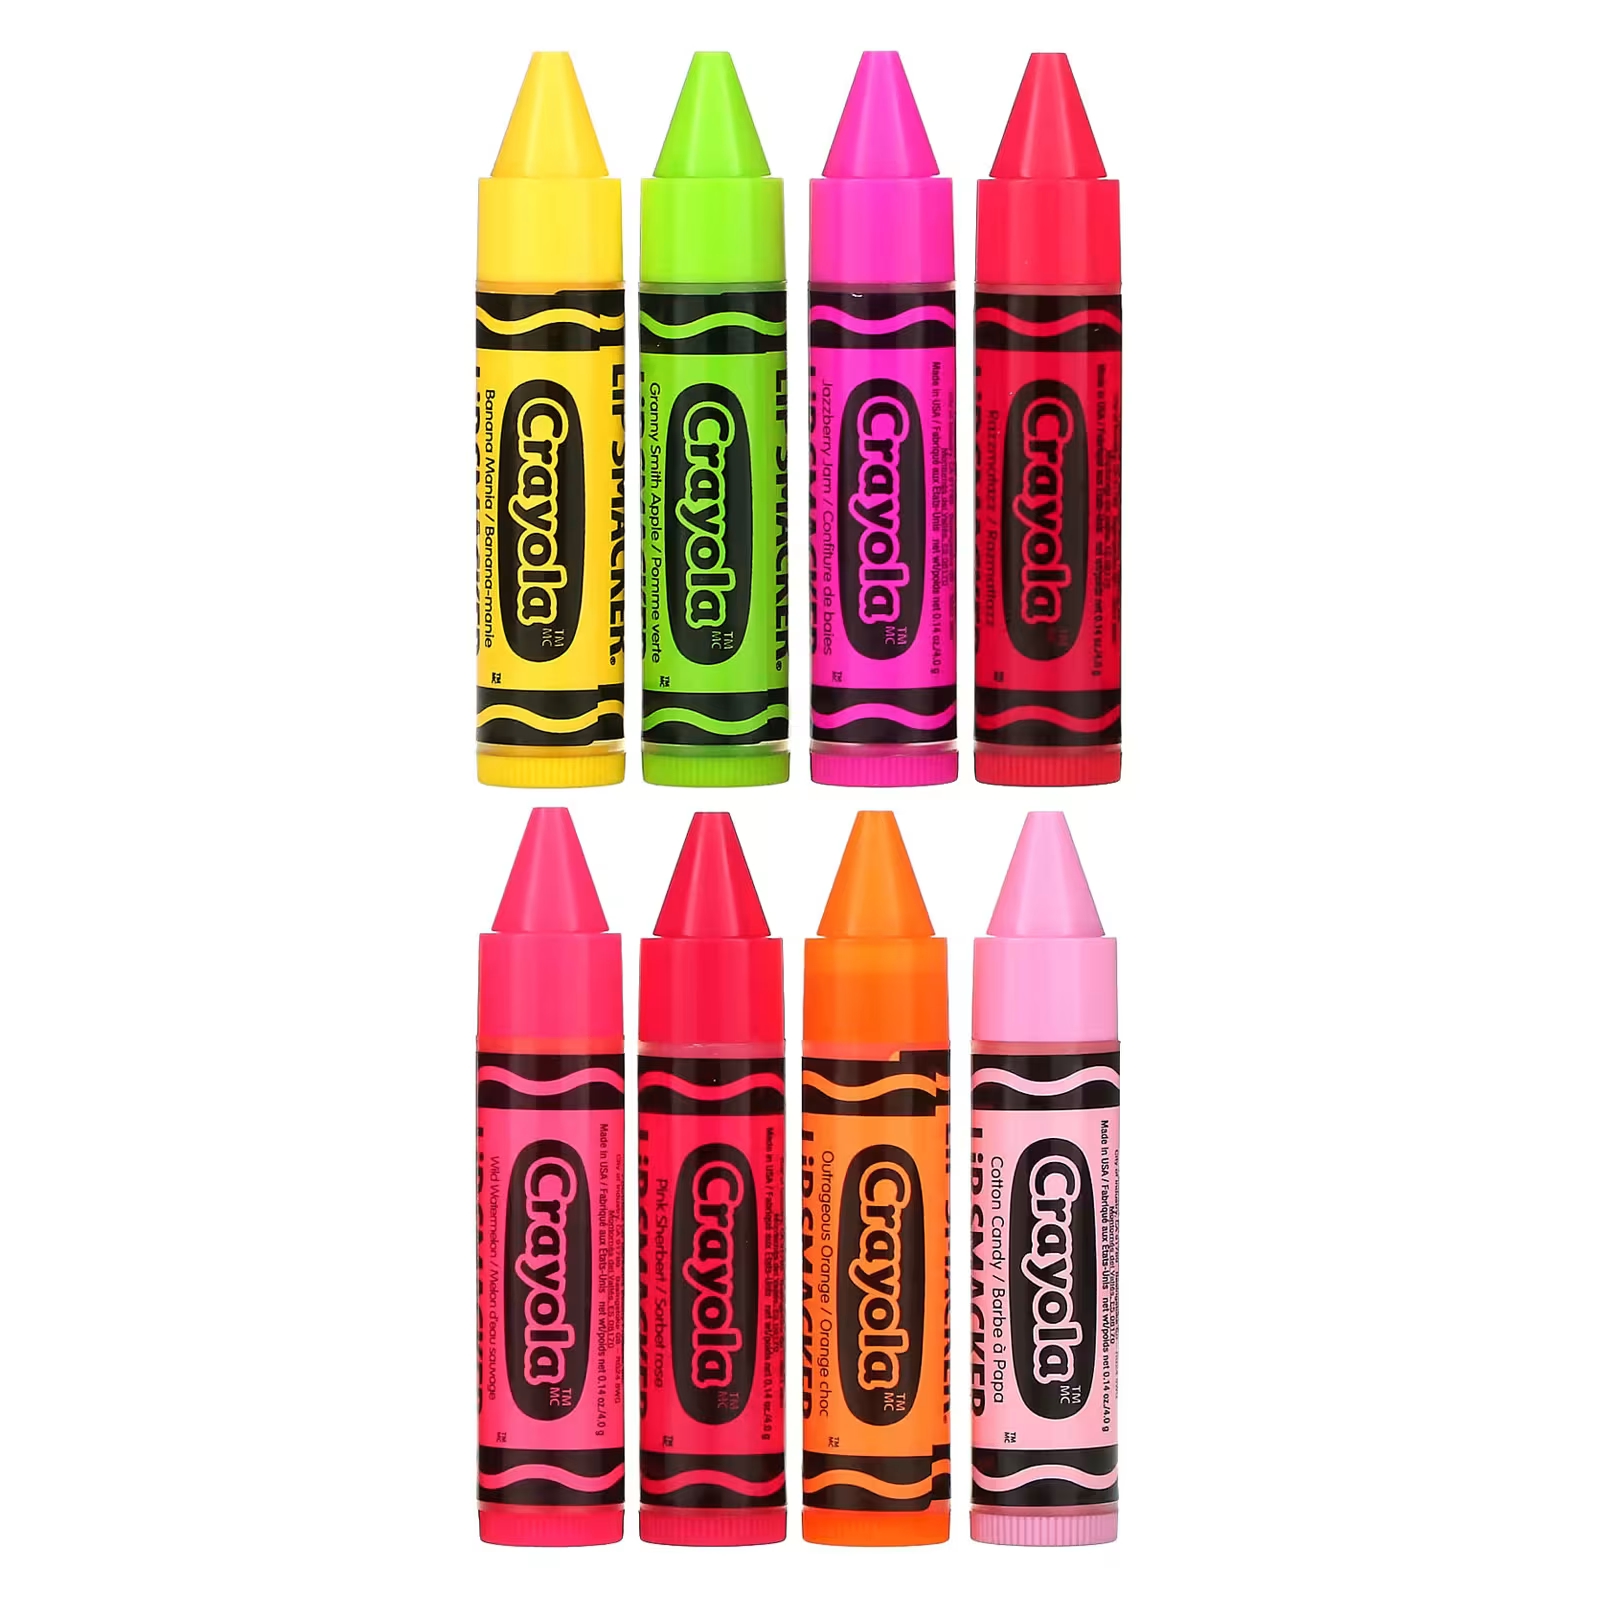 Lip Smacker Crayola Бальзам для губ «Вечеринка», 8 штук по 0,14 унции (4 г) каждая tcmt090204 em ybg205 tcmt090208 em ybg205 tcmt090204 em ybg202 tcmt090208 em ybg202 tcmt09 zcc ct карбидные вставки с чпу 10 шт коробка